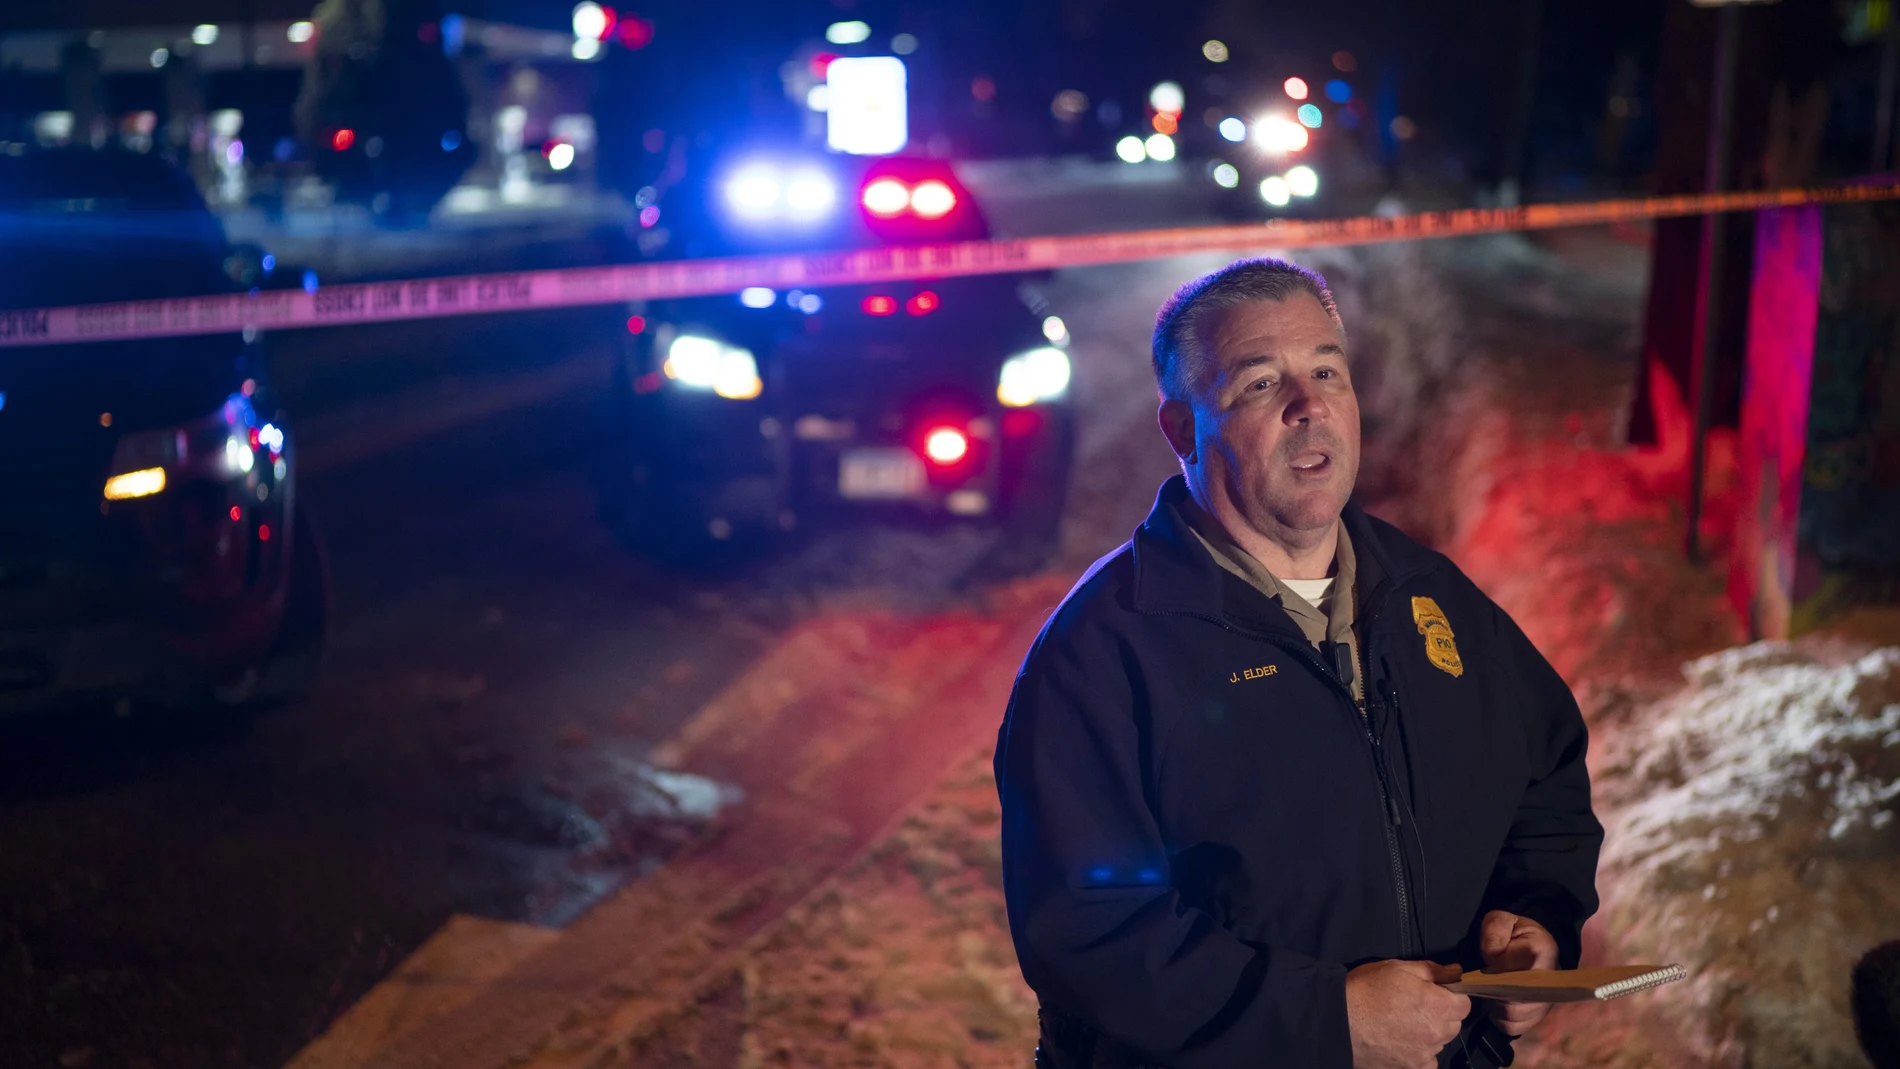 El portavoz de la policía de Minneapolis John Elder en el lugar de los hechos